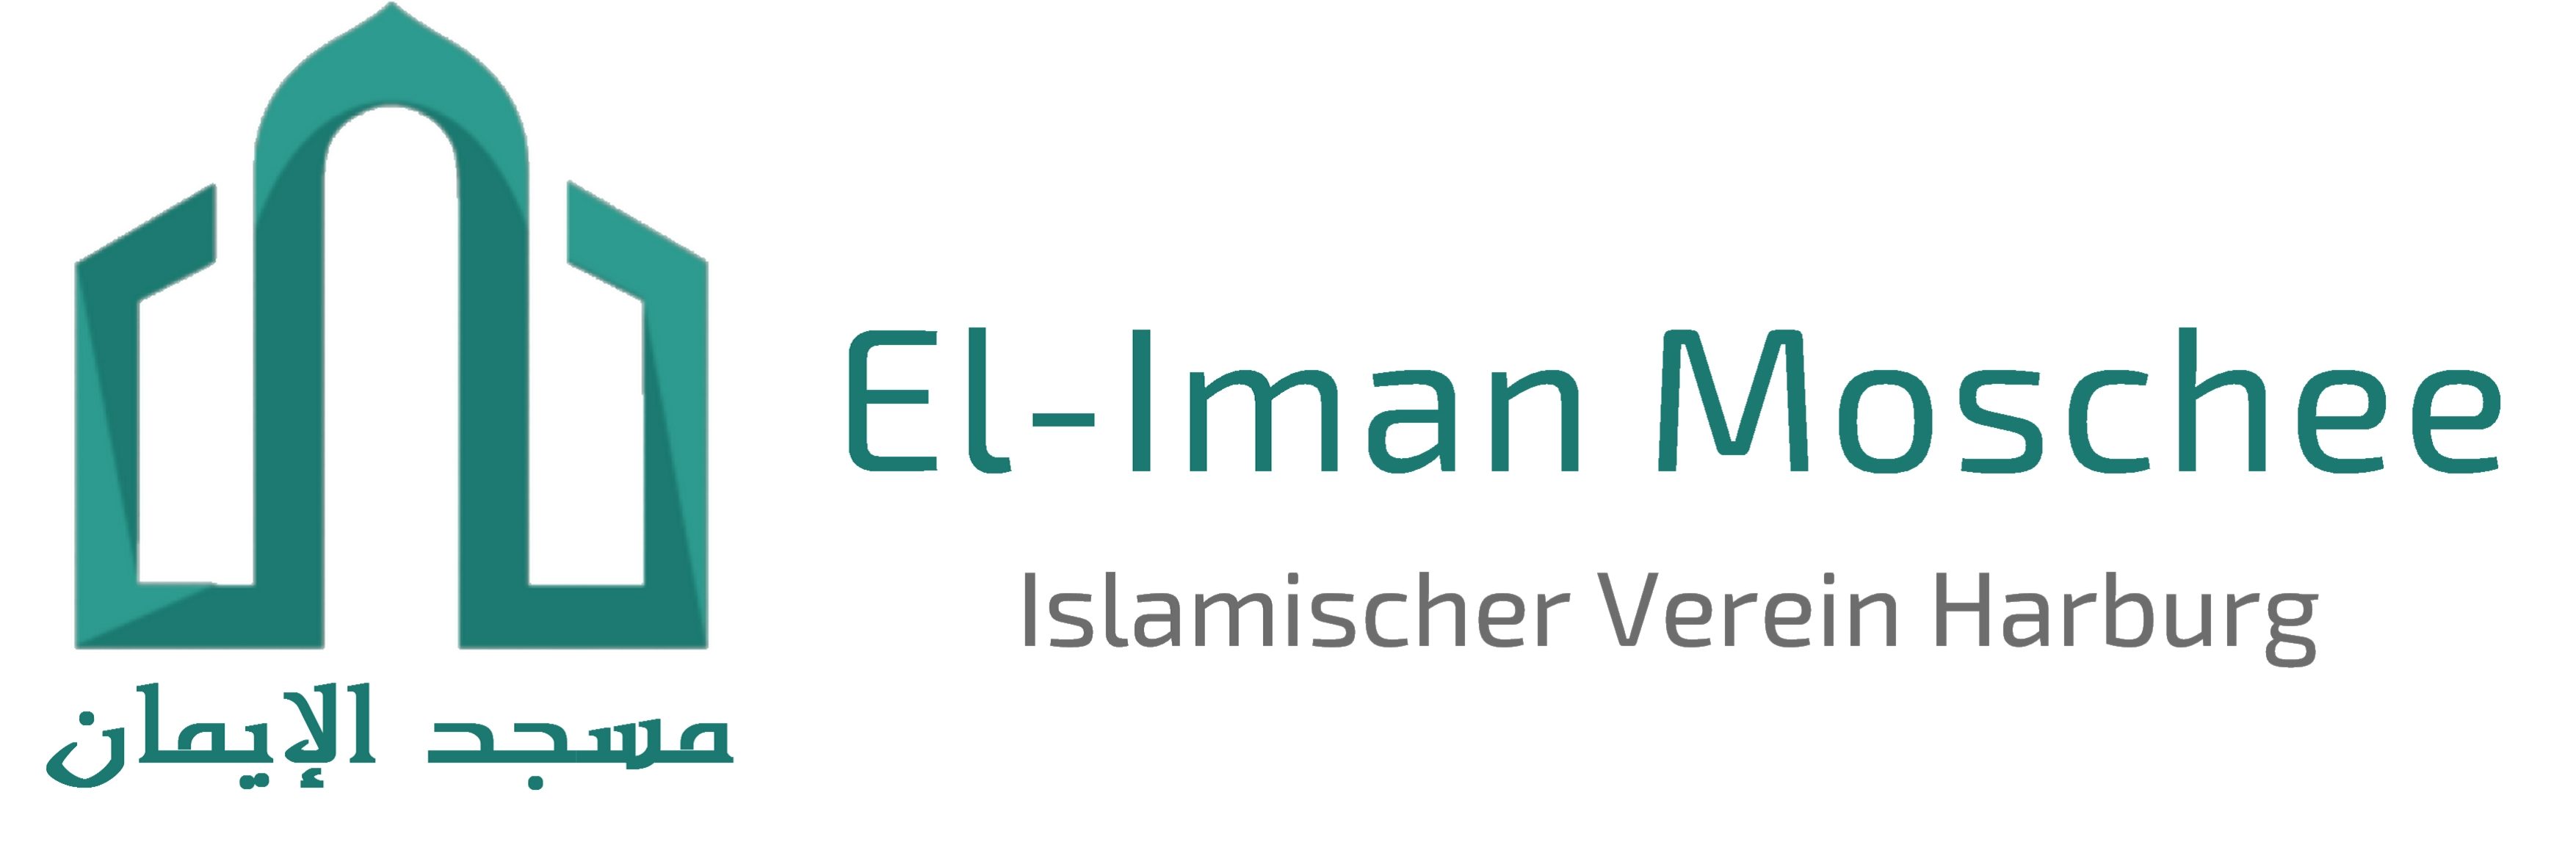 El-Iman Moschee e.V.